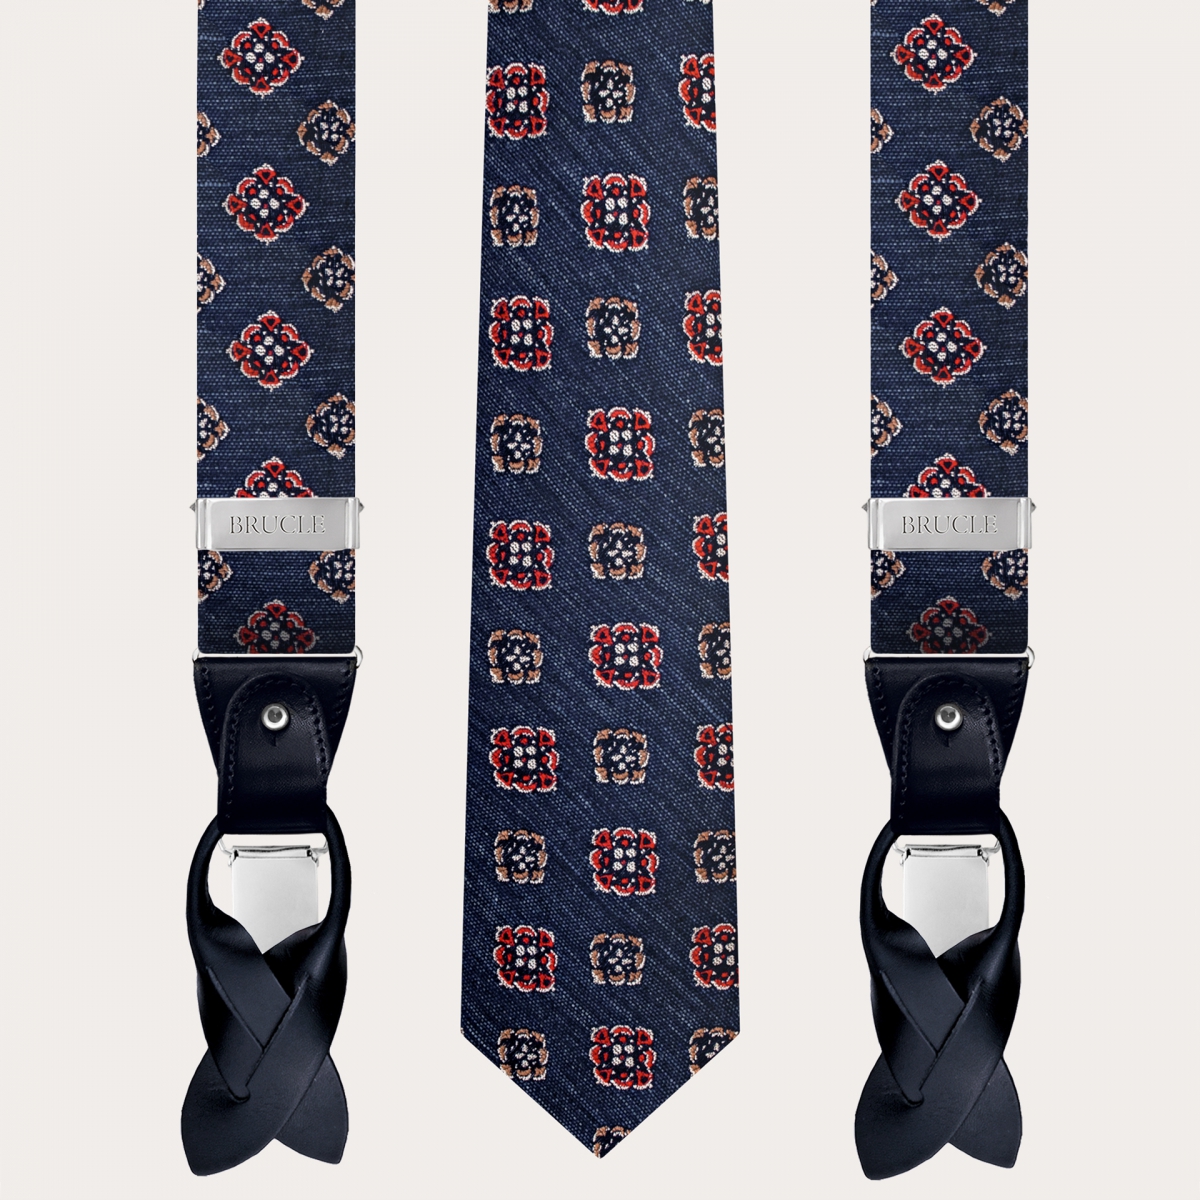 Bretelle e cravatta coordinate in seta e cotone, blu denim con fiori